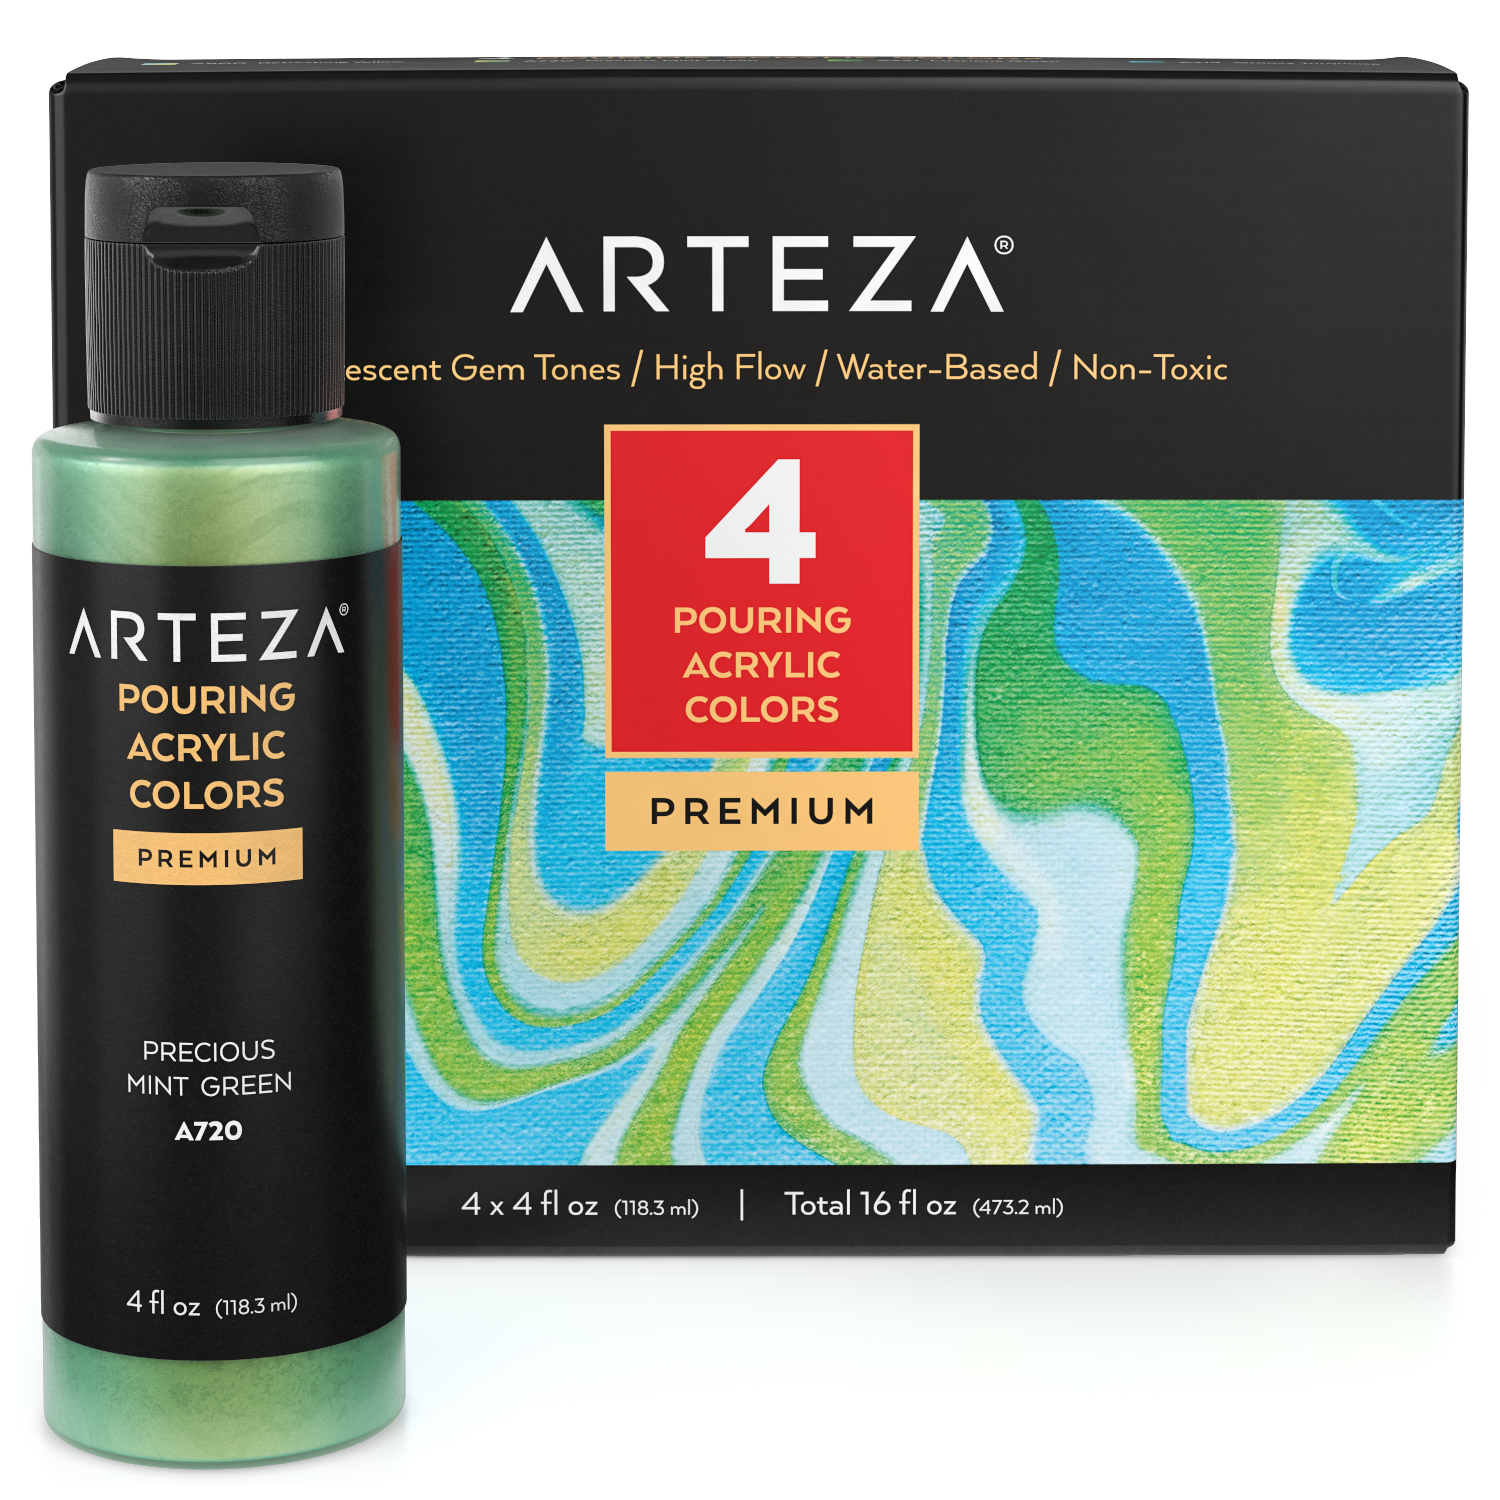 Arteza Iridescent Acrylic Paint, Set of 4, Gem Tones, 4 fl oz Bottles, High-Flow Pouring Paint, Art Supplies for Canvas, Glass, Wood, Ceramics, Tile